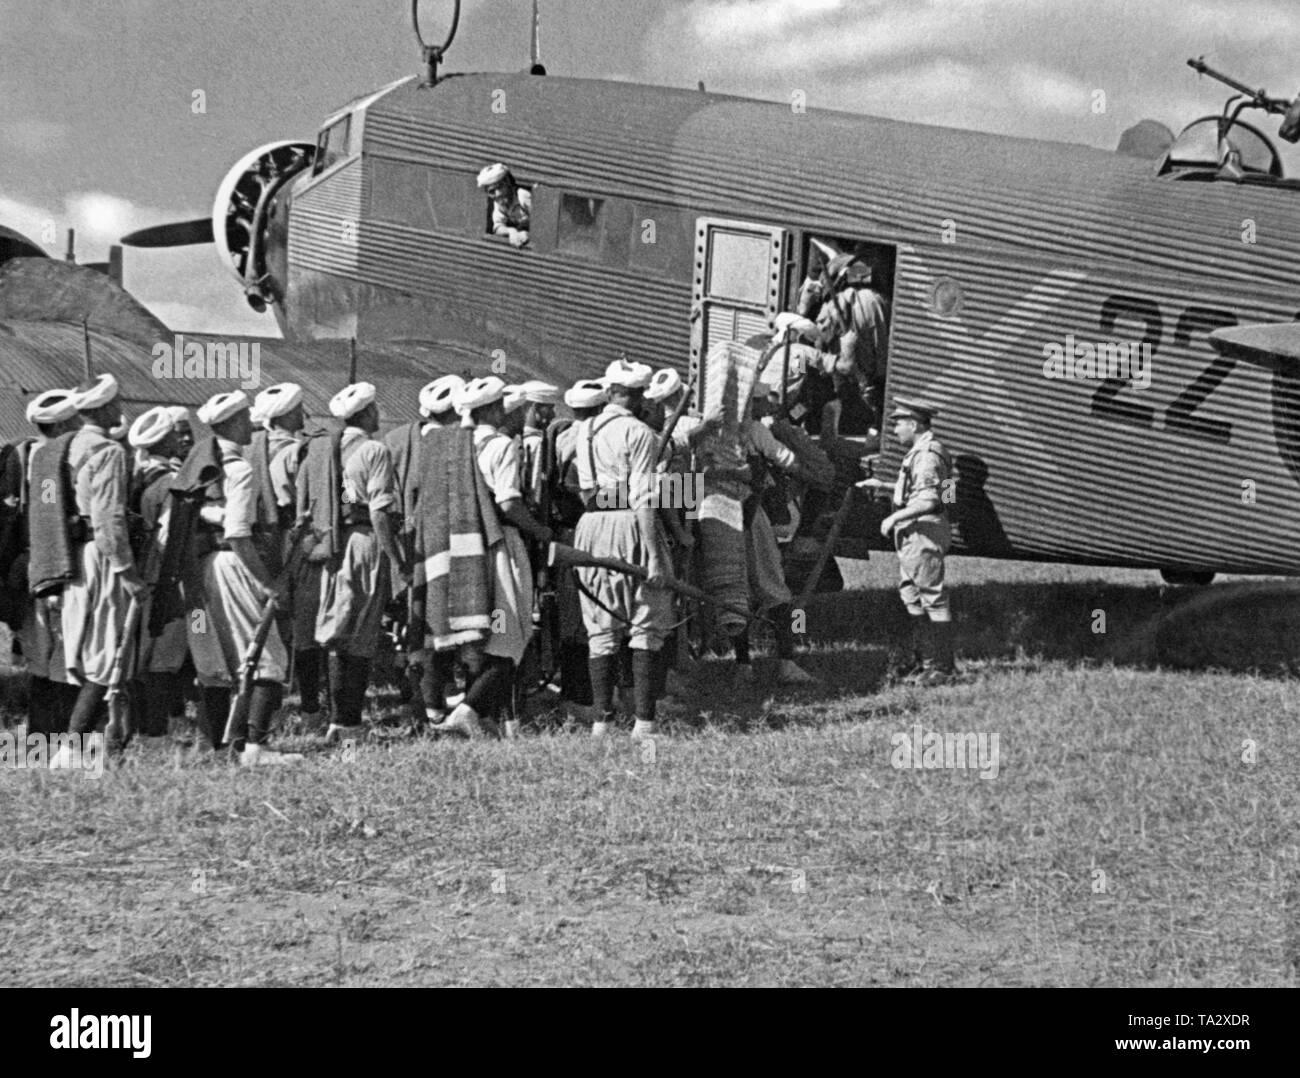 La foto mostra i soldati marocchini spagnola della Legione Straniera con un tedesco Junkers Ju 52 velivoli da trasporto con la vernice del tedesco Legione Condor. I soldati erano a volare da Tetouan, Spanish-Morocco, Africa, con la terraferma spagnola nell'estate del 1936. A destra nella parte superiore, l'on-board arma (MG 34) contro i combattenti nemici. Dopo lo scoppio della Guerra Civile Spagnola il 27 luglio 1936, la Germania ha fornito assistenza militare al Generale Franco (operazione Feuerzeauber). In aggiunta, 20 Ju-52s (principalmente aerei Lufthansa) sono state fornite, che ha volato più di 800 voli di Foto Stock